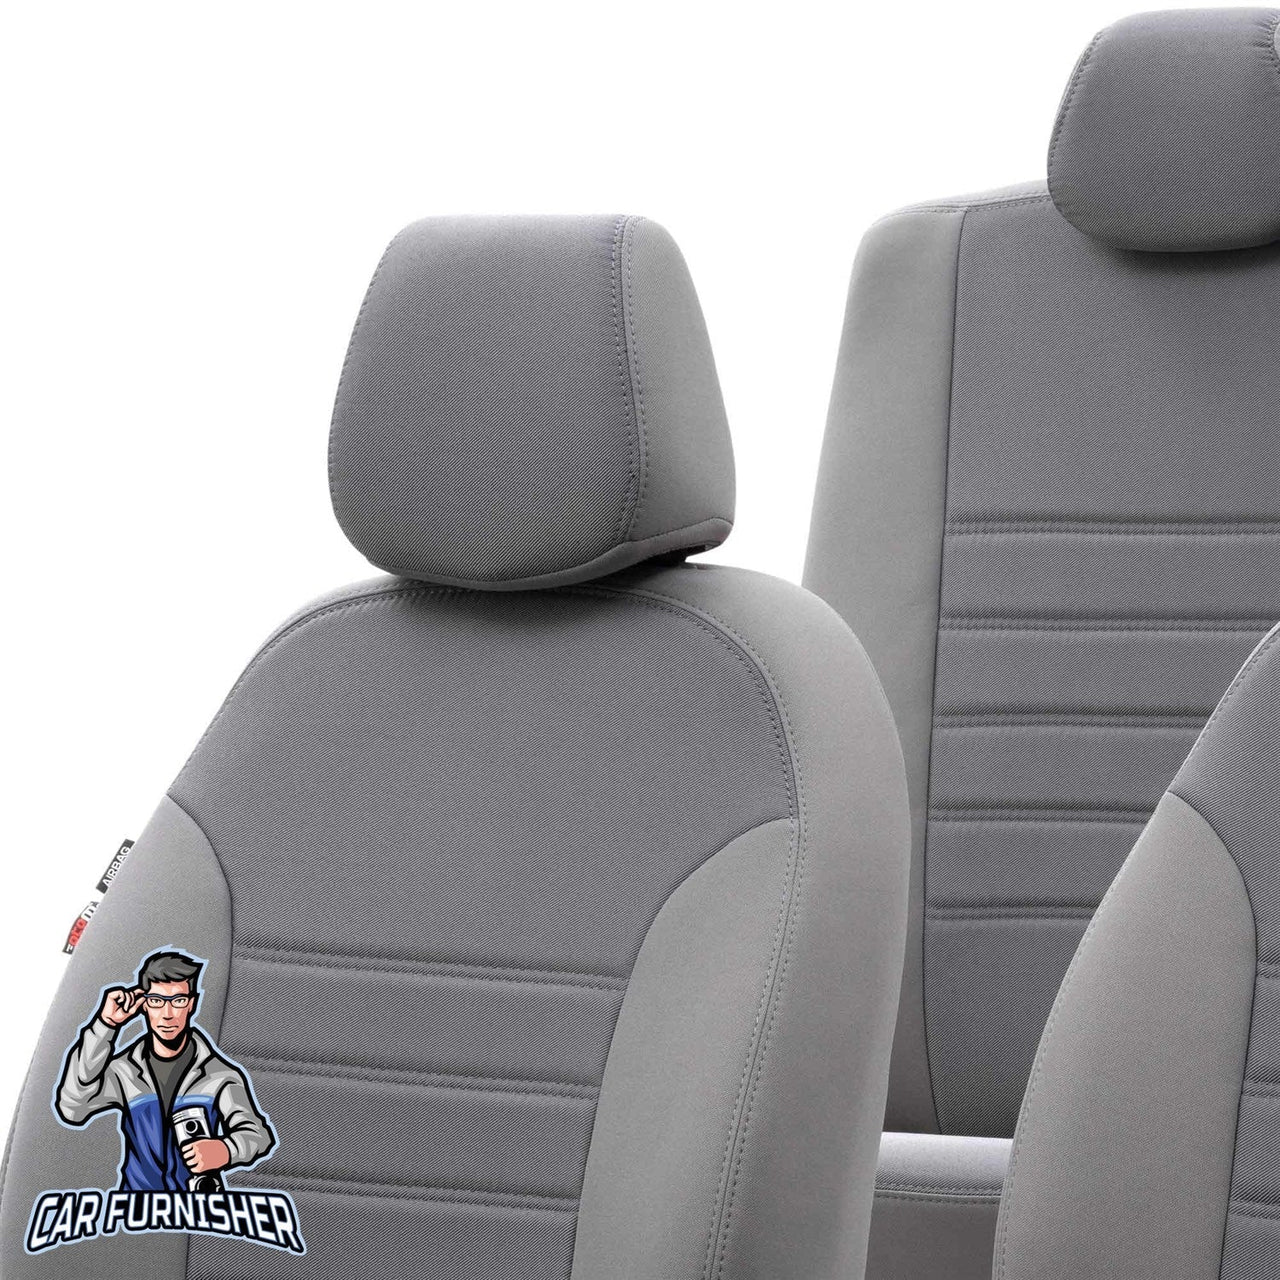 Bmw X3 Seat Cover Original Jacquard Design Gray Jacquard Fabric